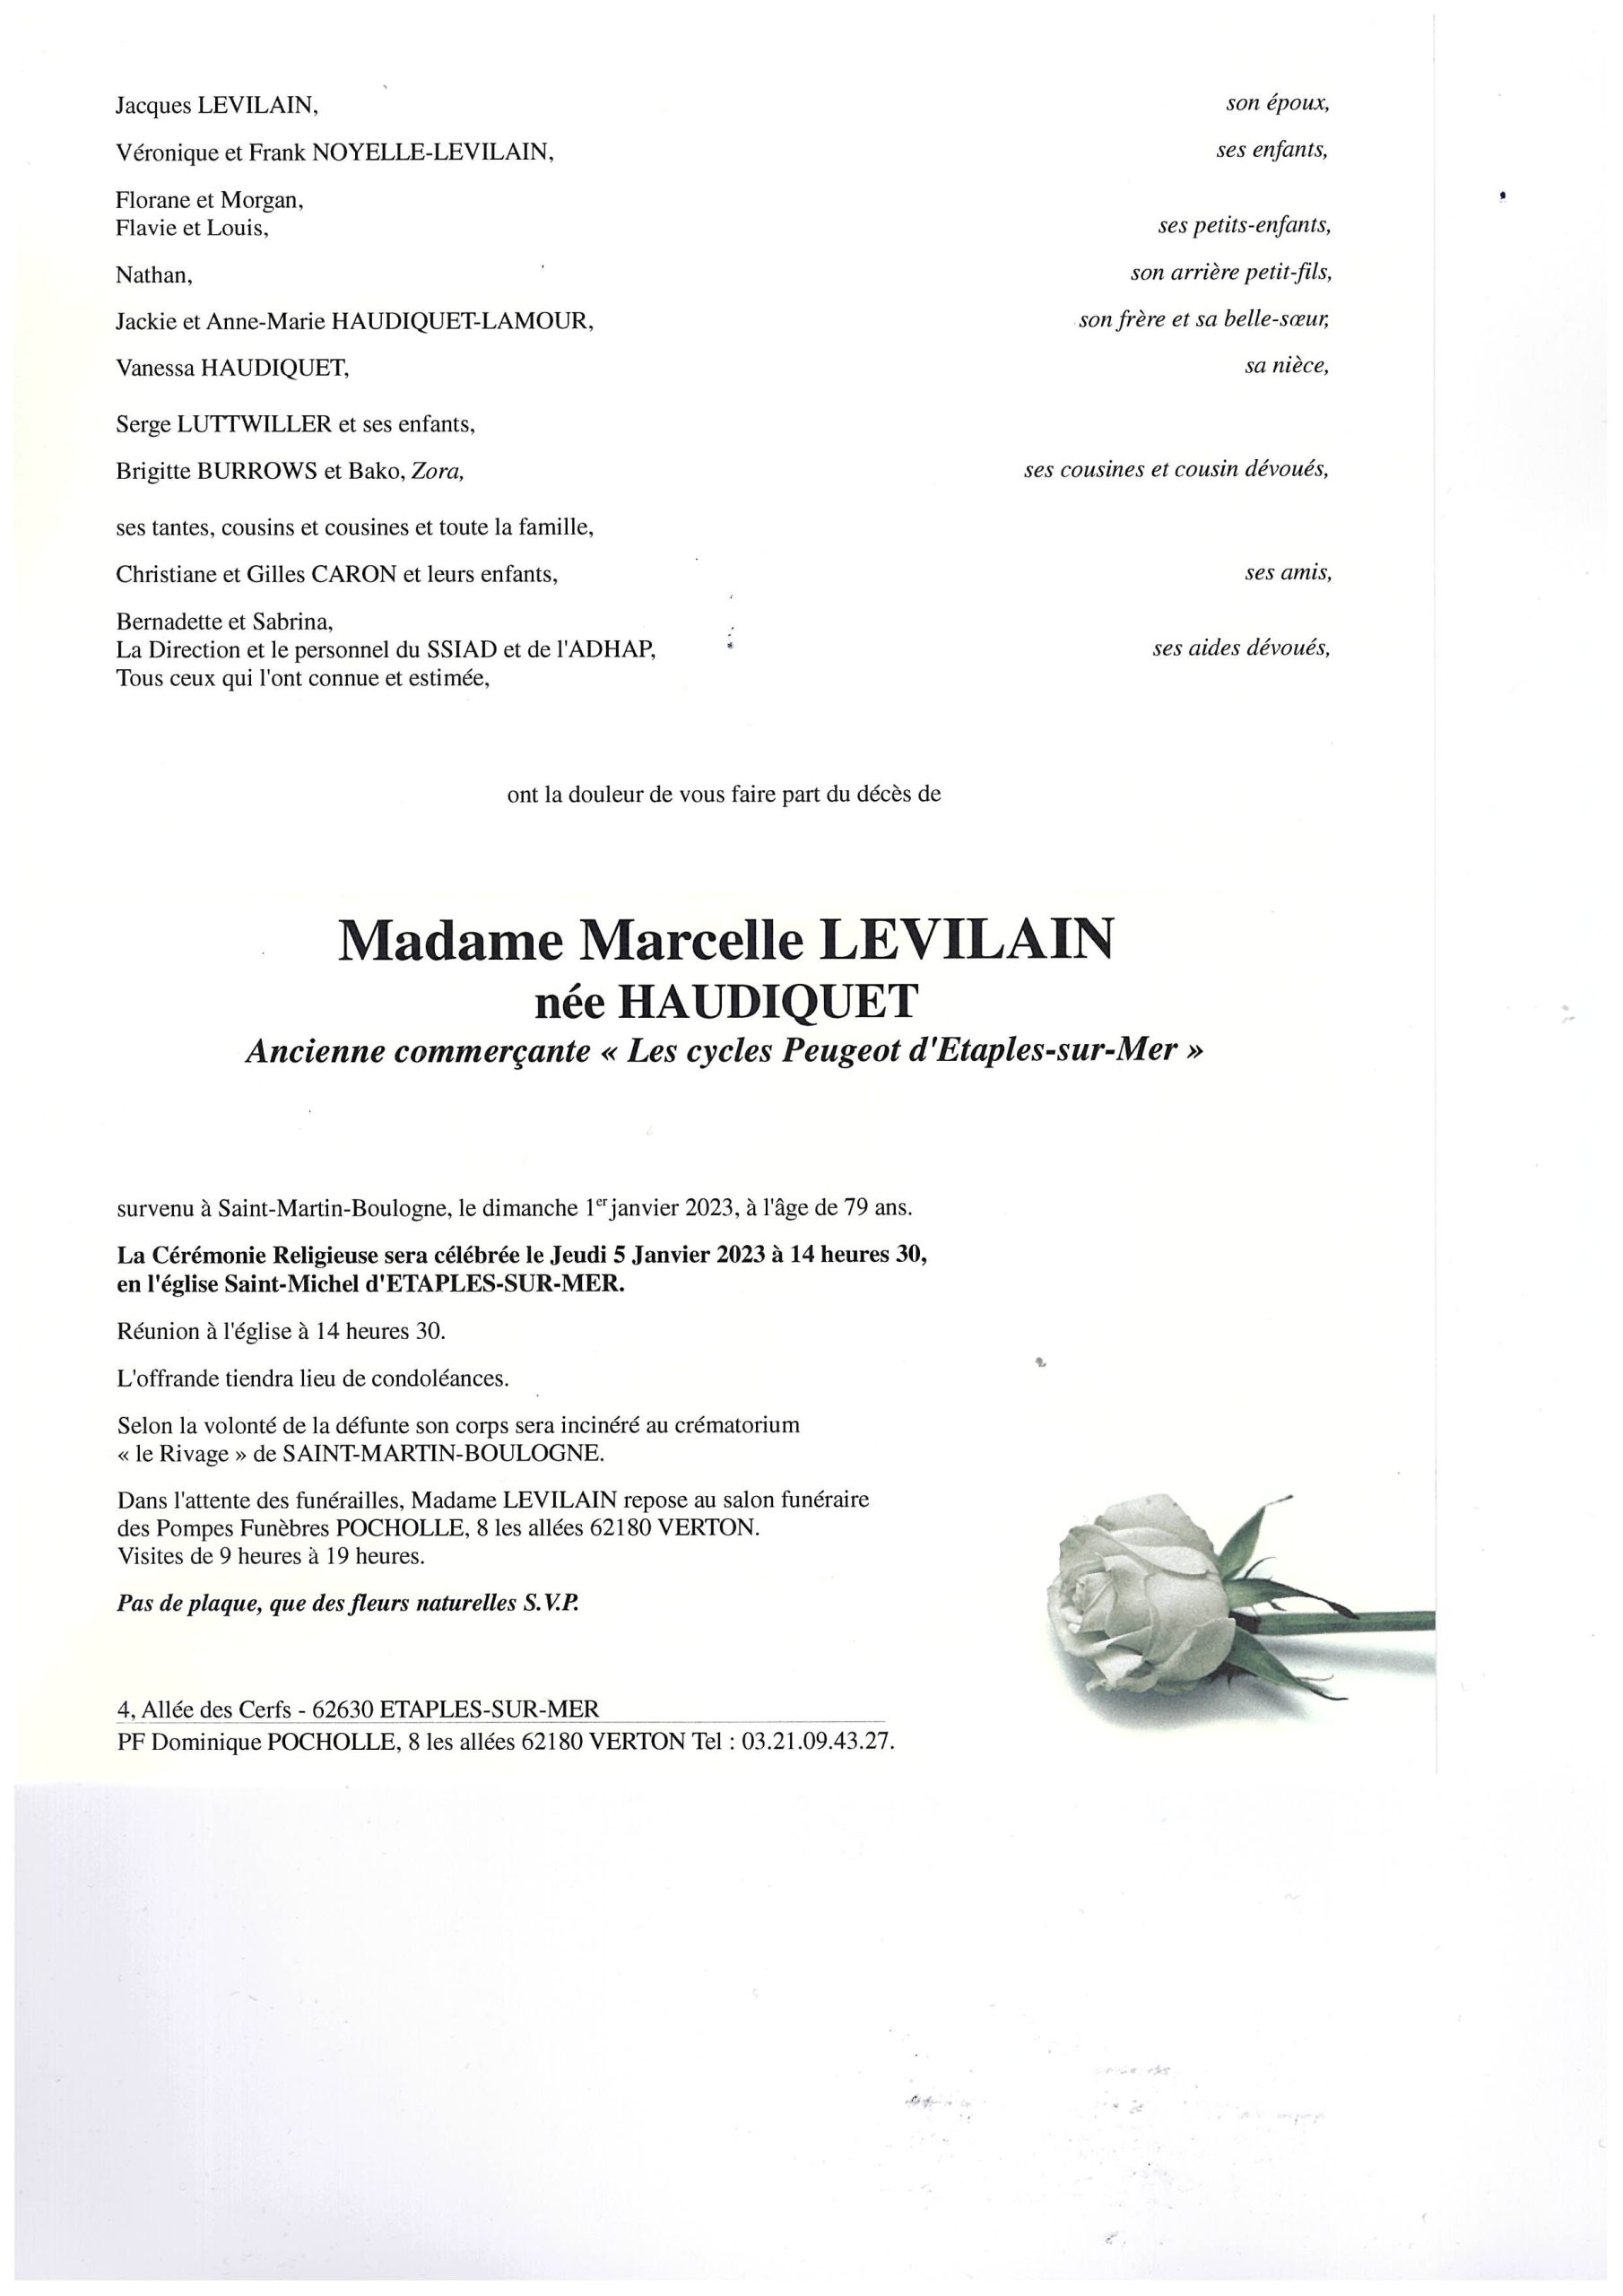 Avis de décès Marcelle LEVILAIN née HAUDIQUET